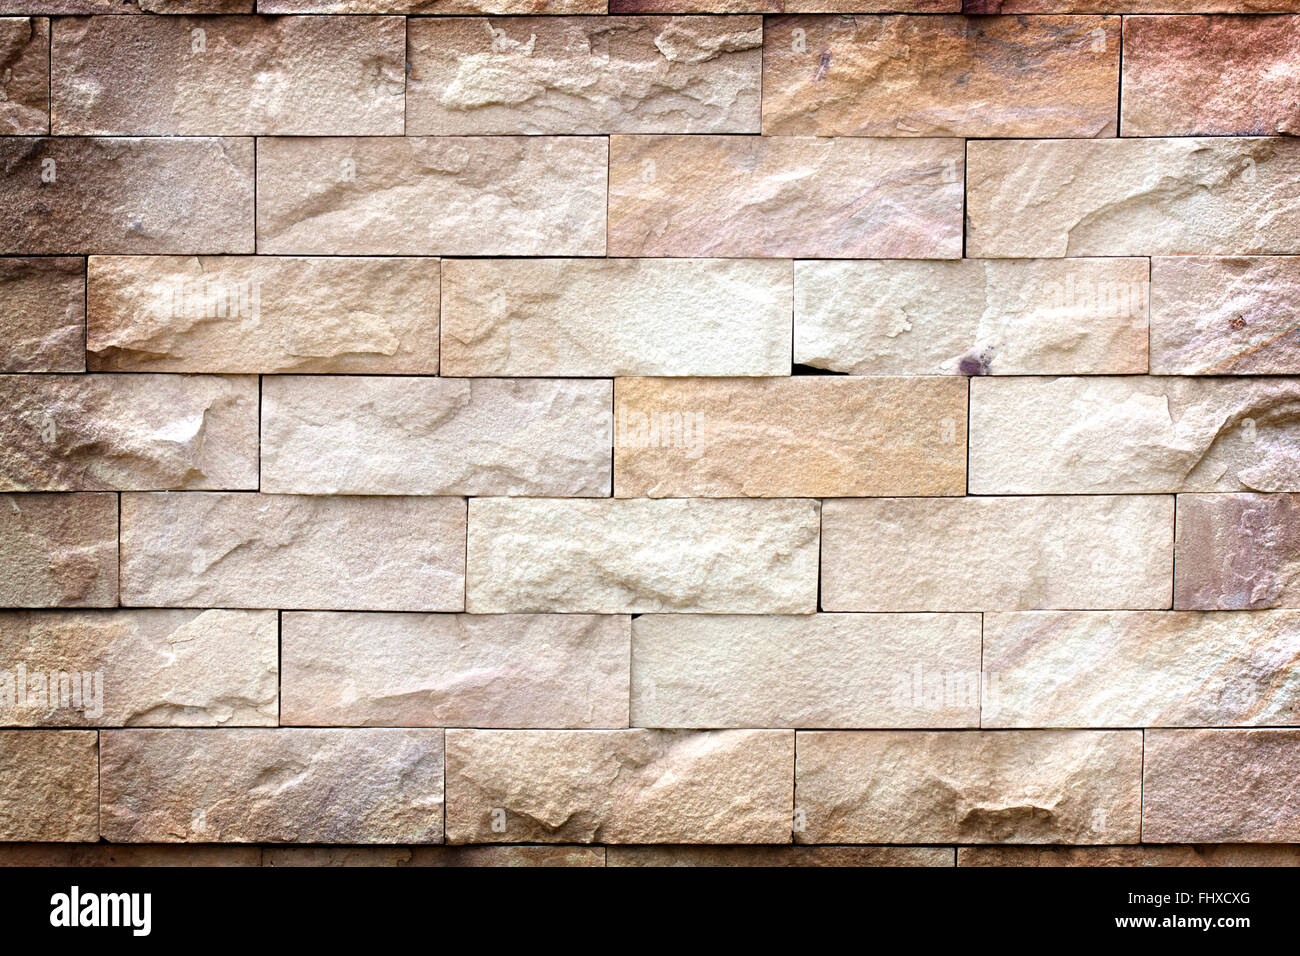 La texture des murs en pierre, une durabilité extérieure. L'industrie des matériaux de construction Banque D'Images